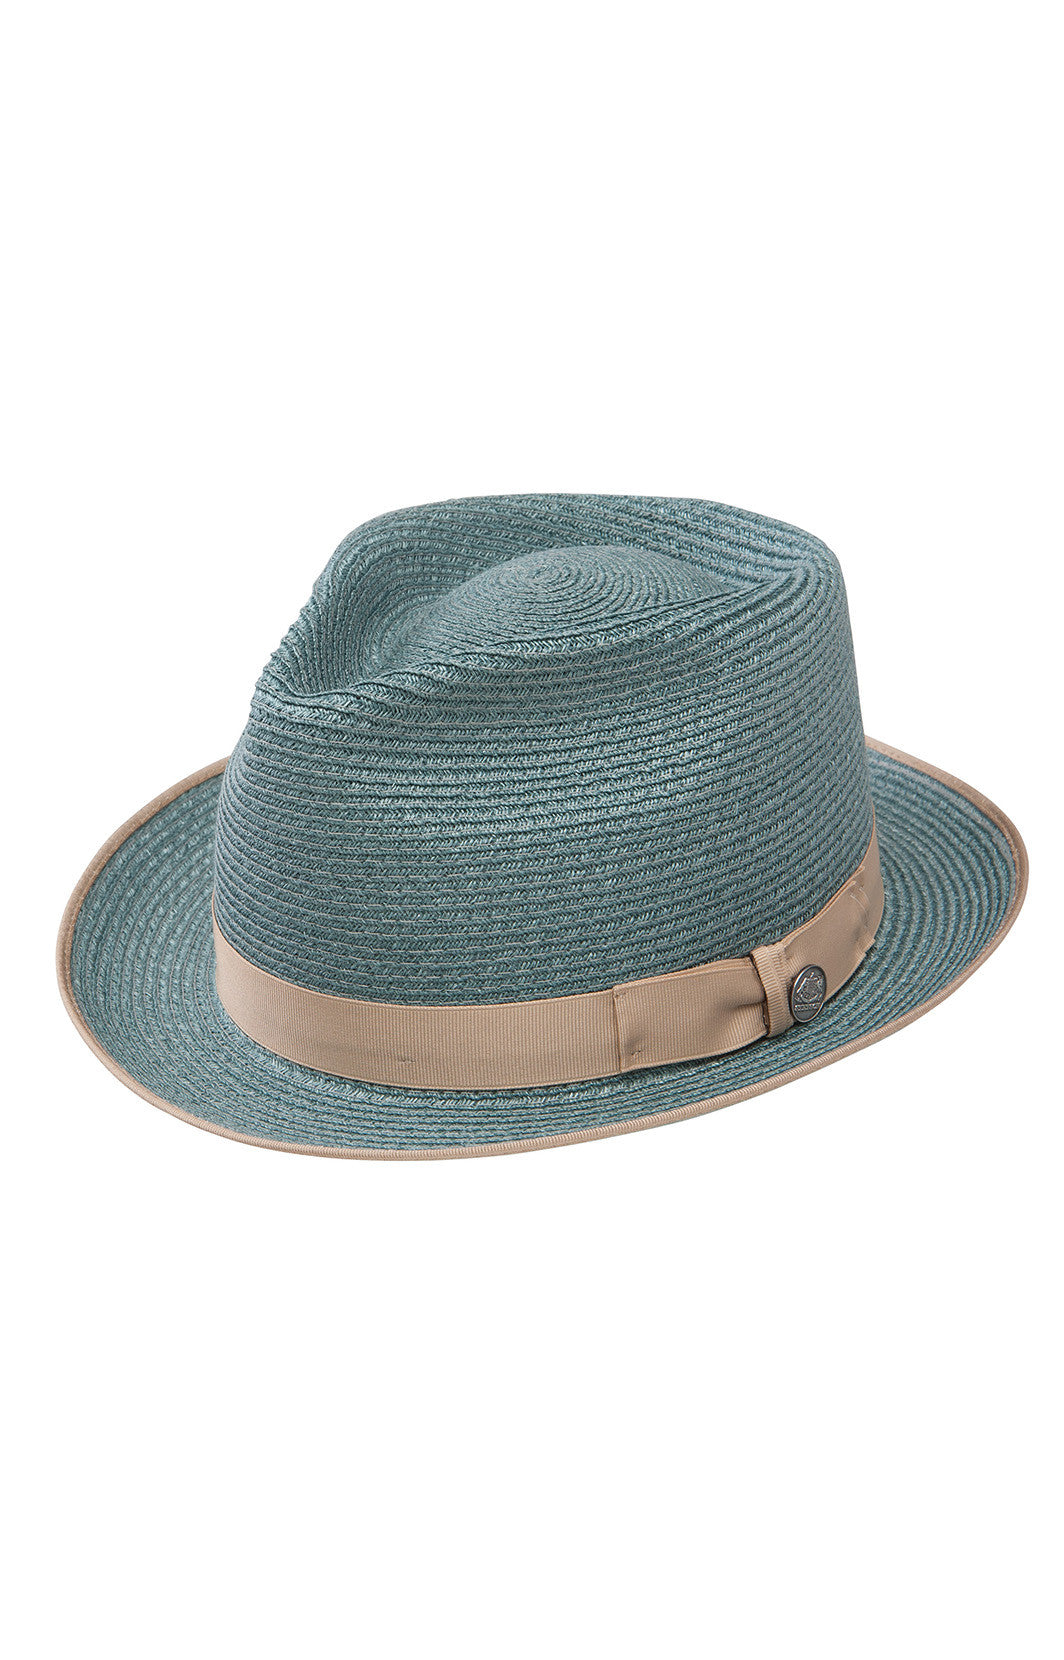 mens hats, blue hat, hemp hat, stetson hat, summer hat, derby hat